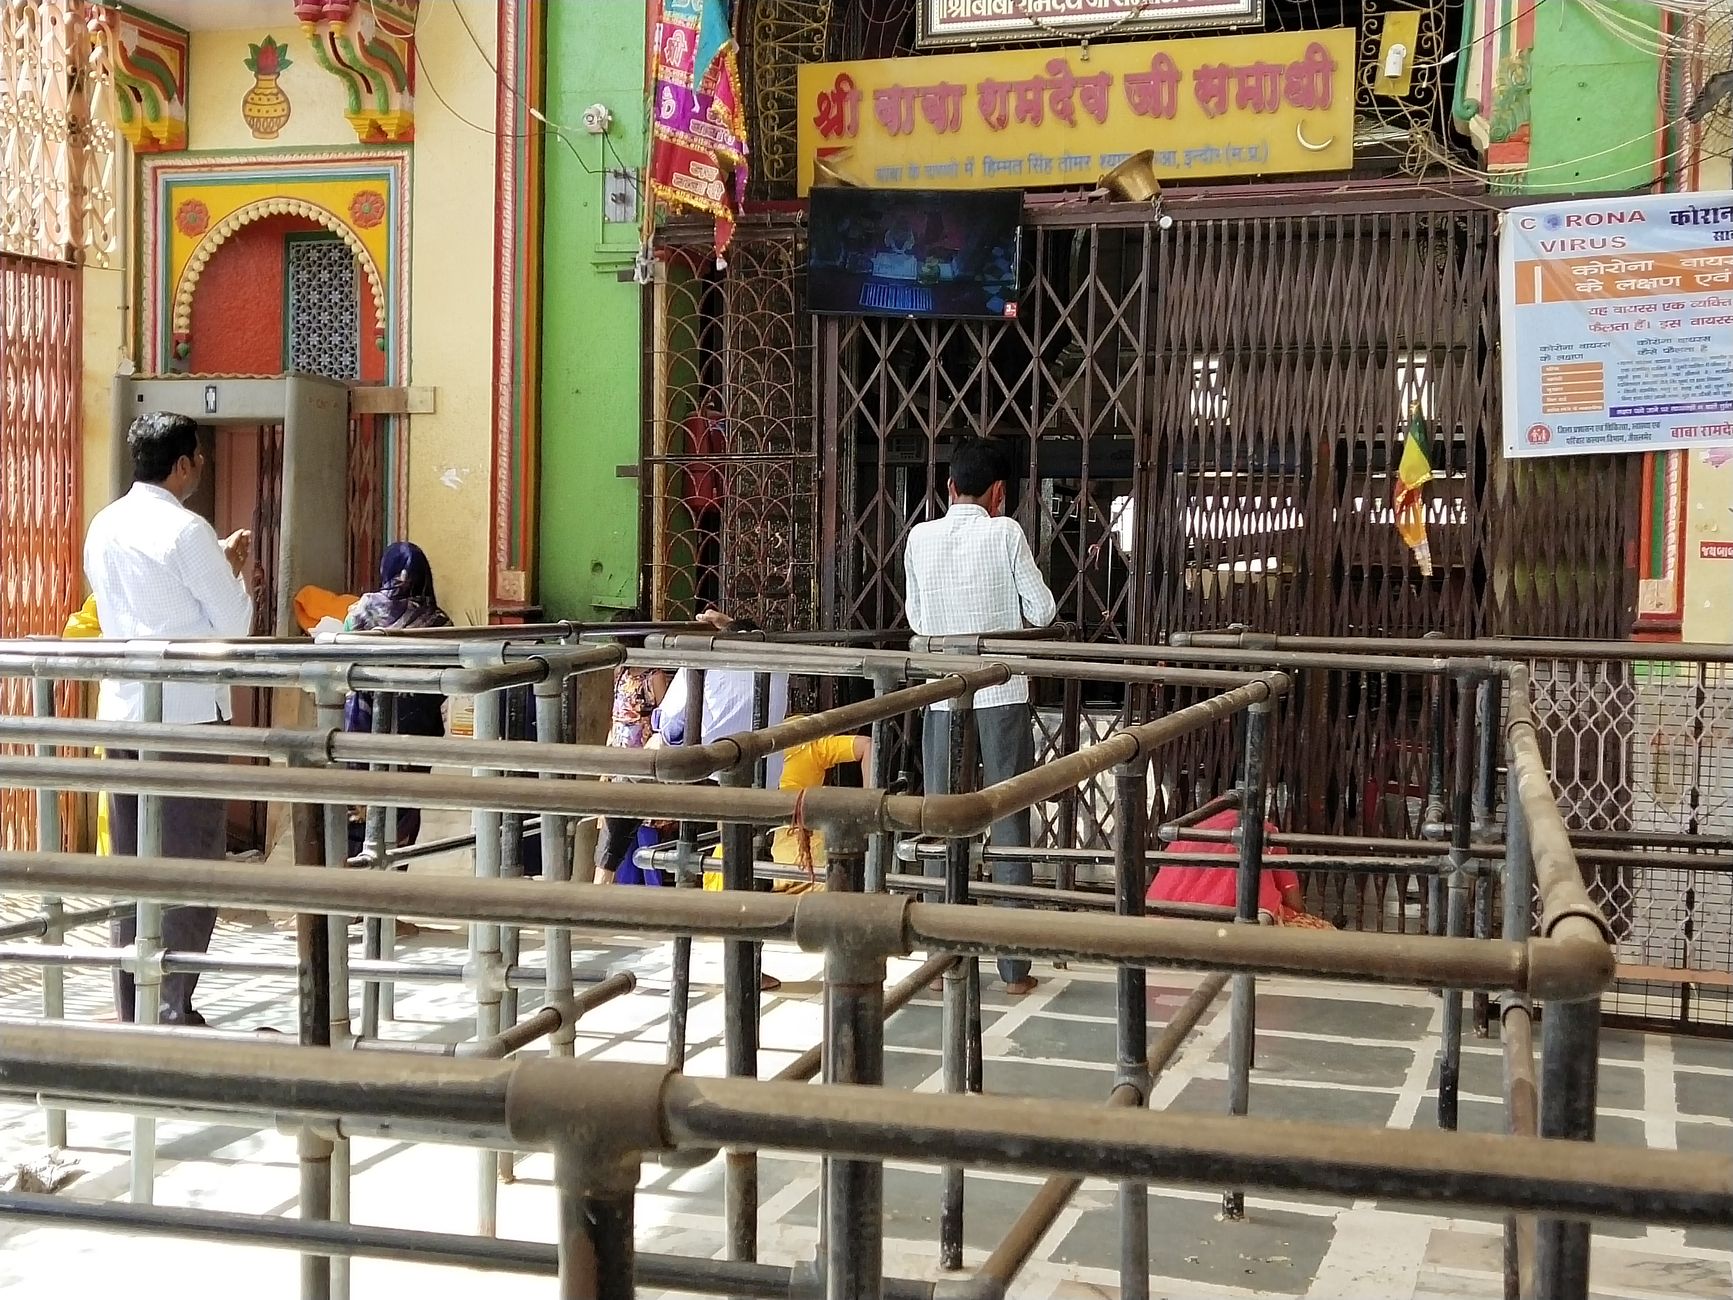 70 दिनों से बंद पड़ा है रामदेवरा मंदिर, आर्थिक संकट से रूबरू हो रहे दुकानदार